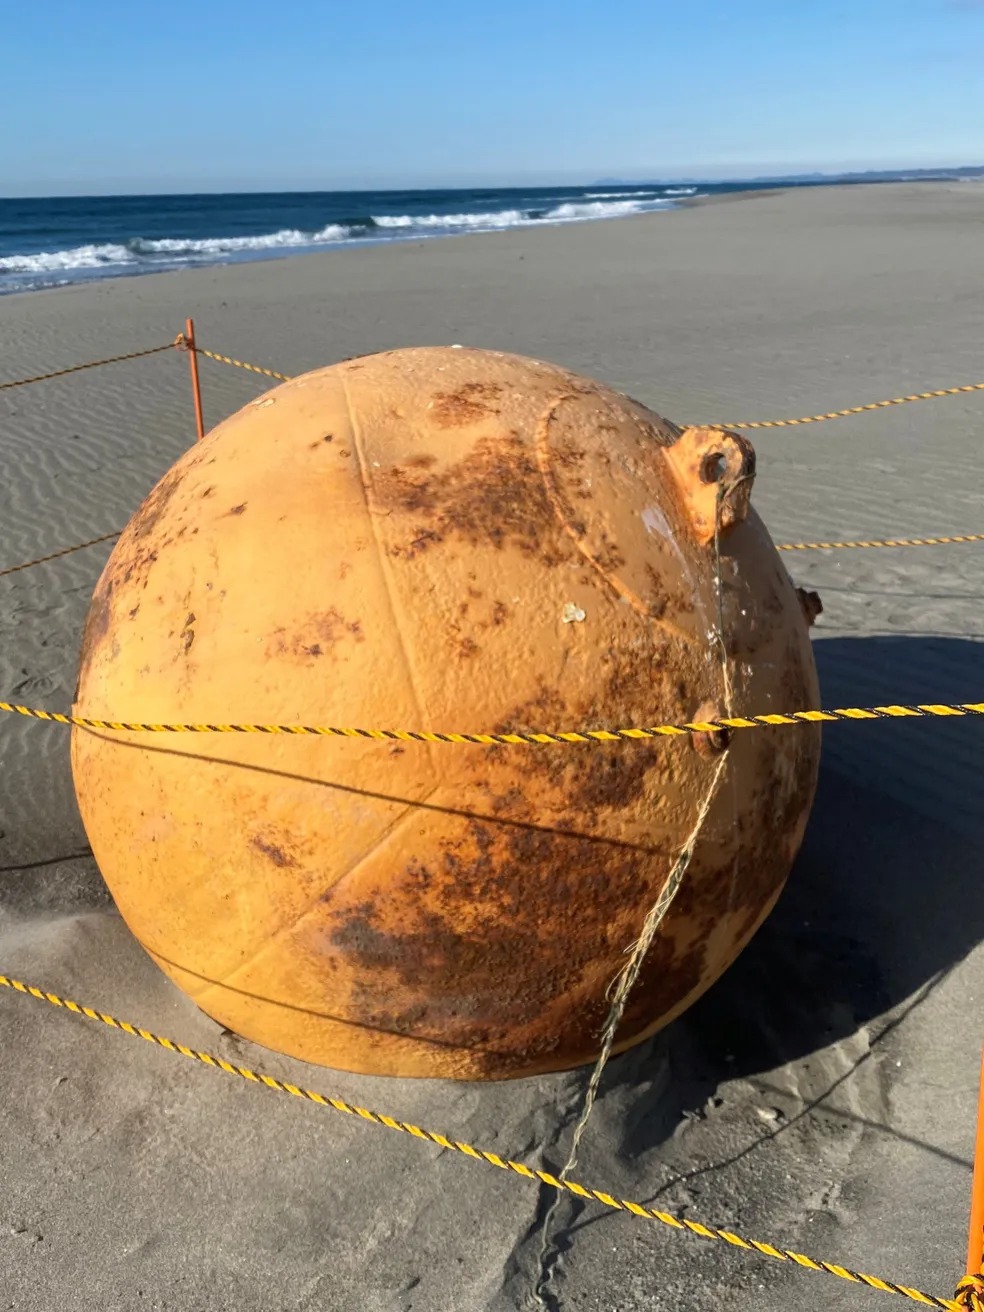 Esfera misteriosa de metal é encontrada em praia no Japão. Uma esfera de metal de cerca de 1,5 metro de diâmetro apareceu na